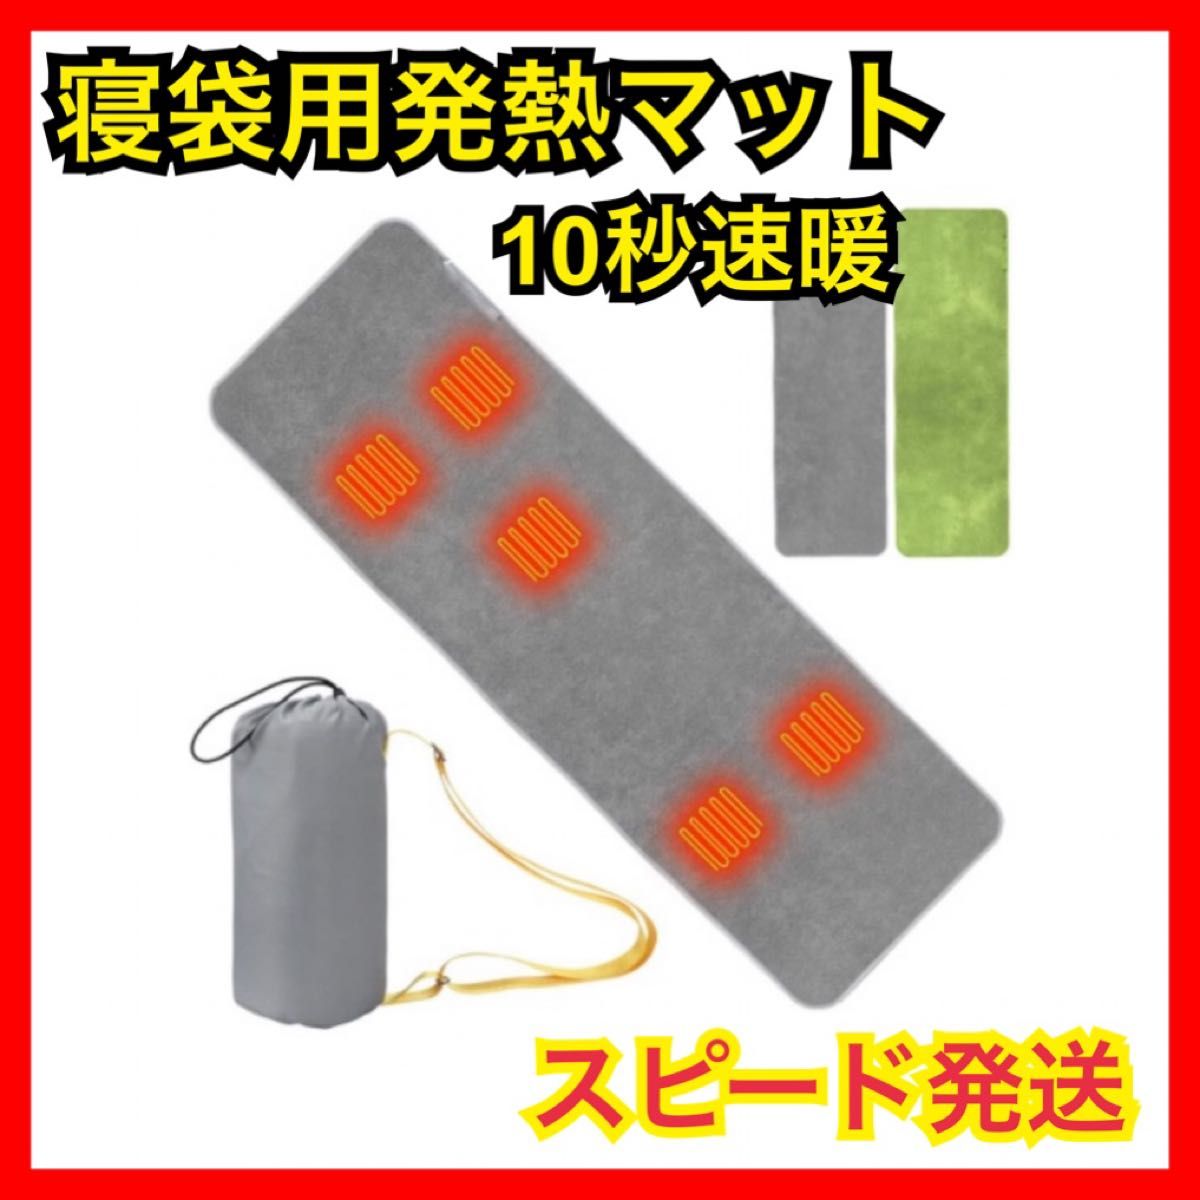 【発熱マット】電熱マット 寝袋用 シュラフ 加熱マット USB給電 防災対策 キャンプ アウトドア 丸洗い 防寒 